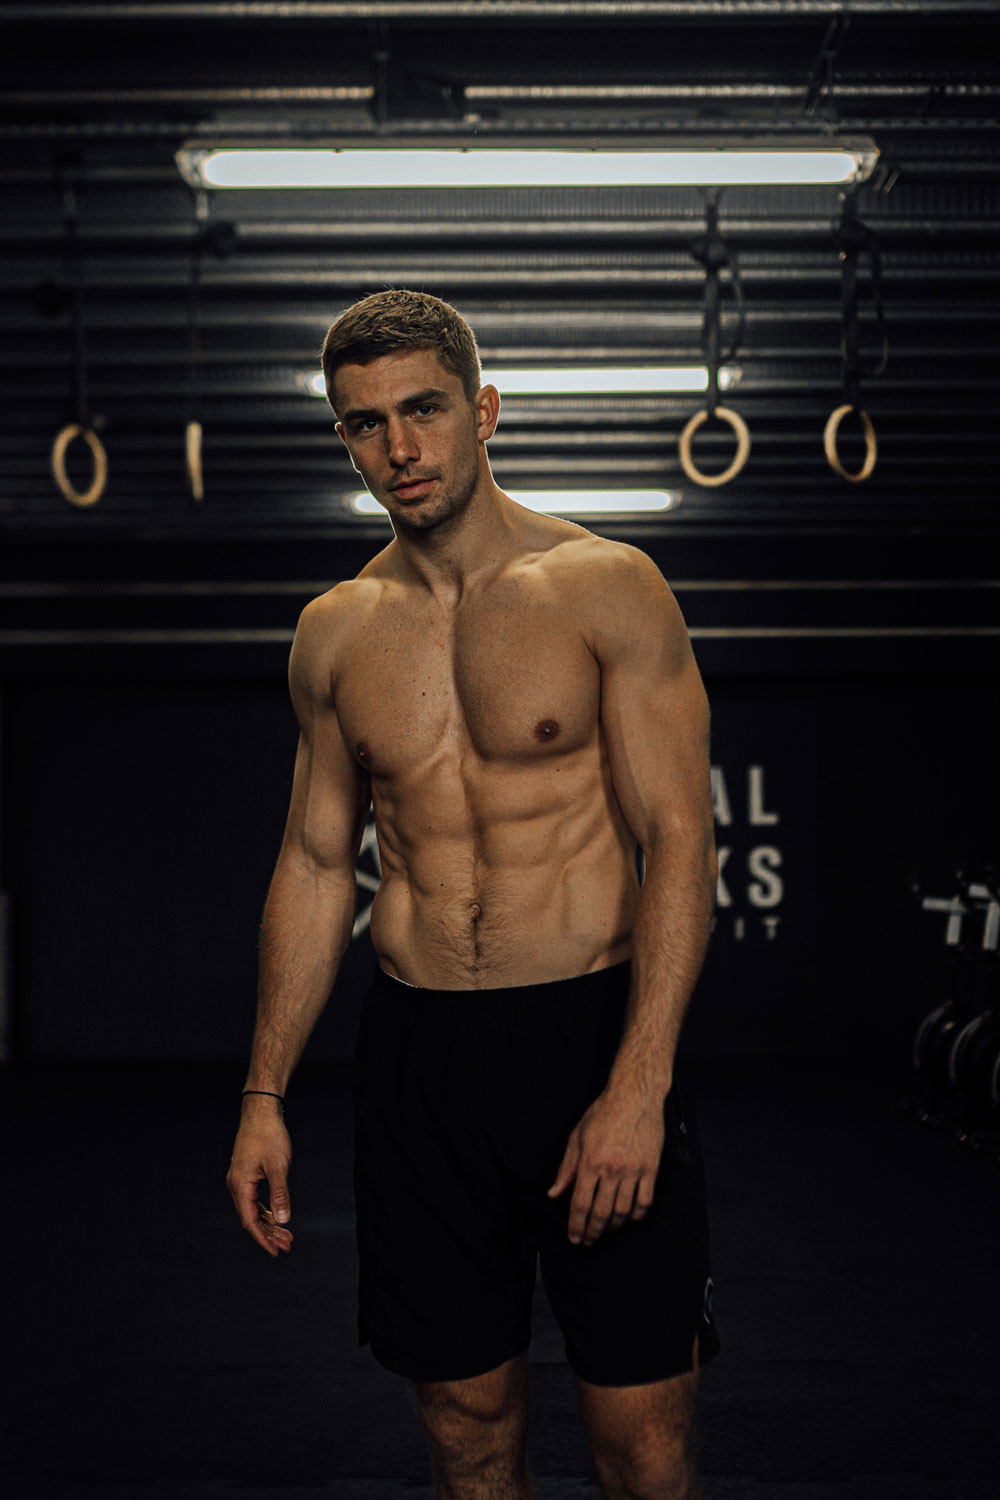 James Yates posing in dimly lit gym